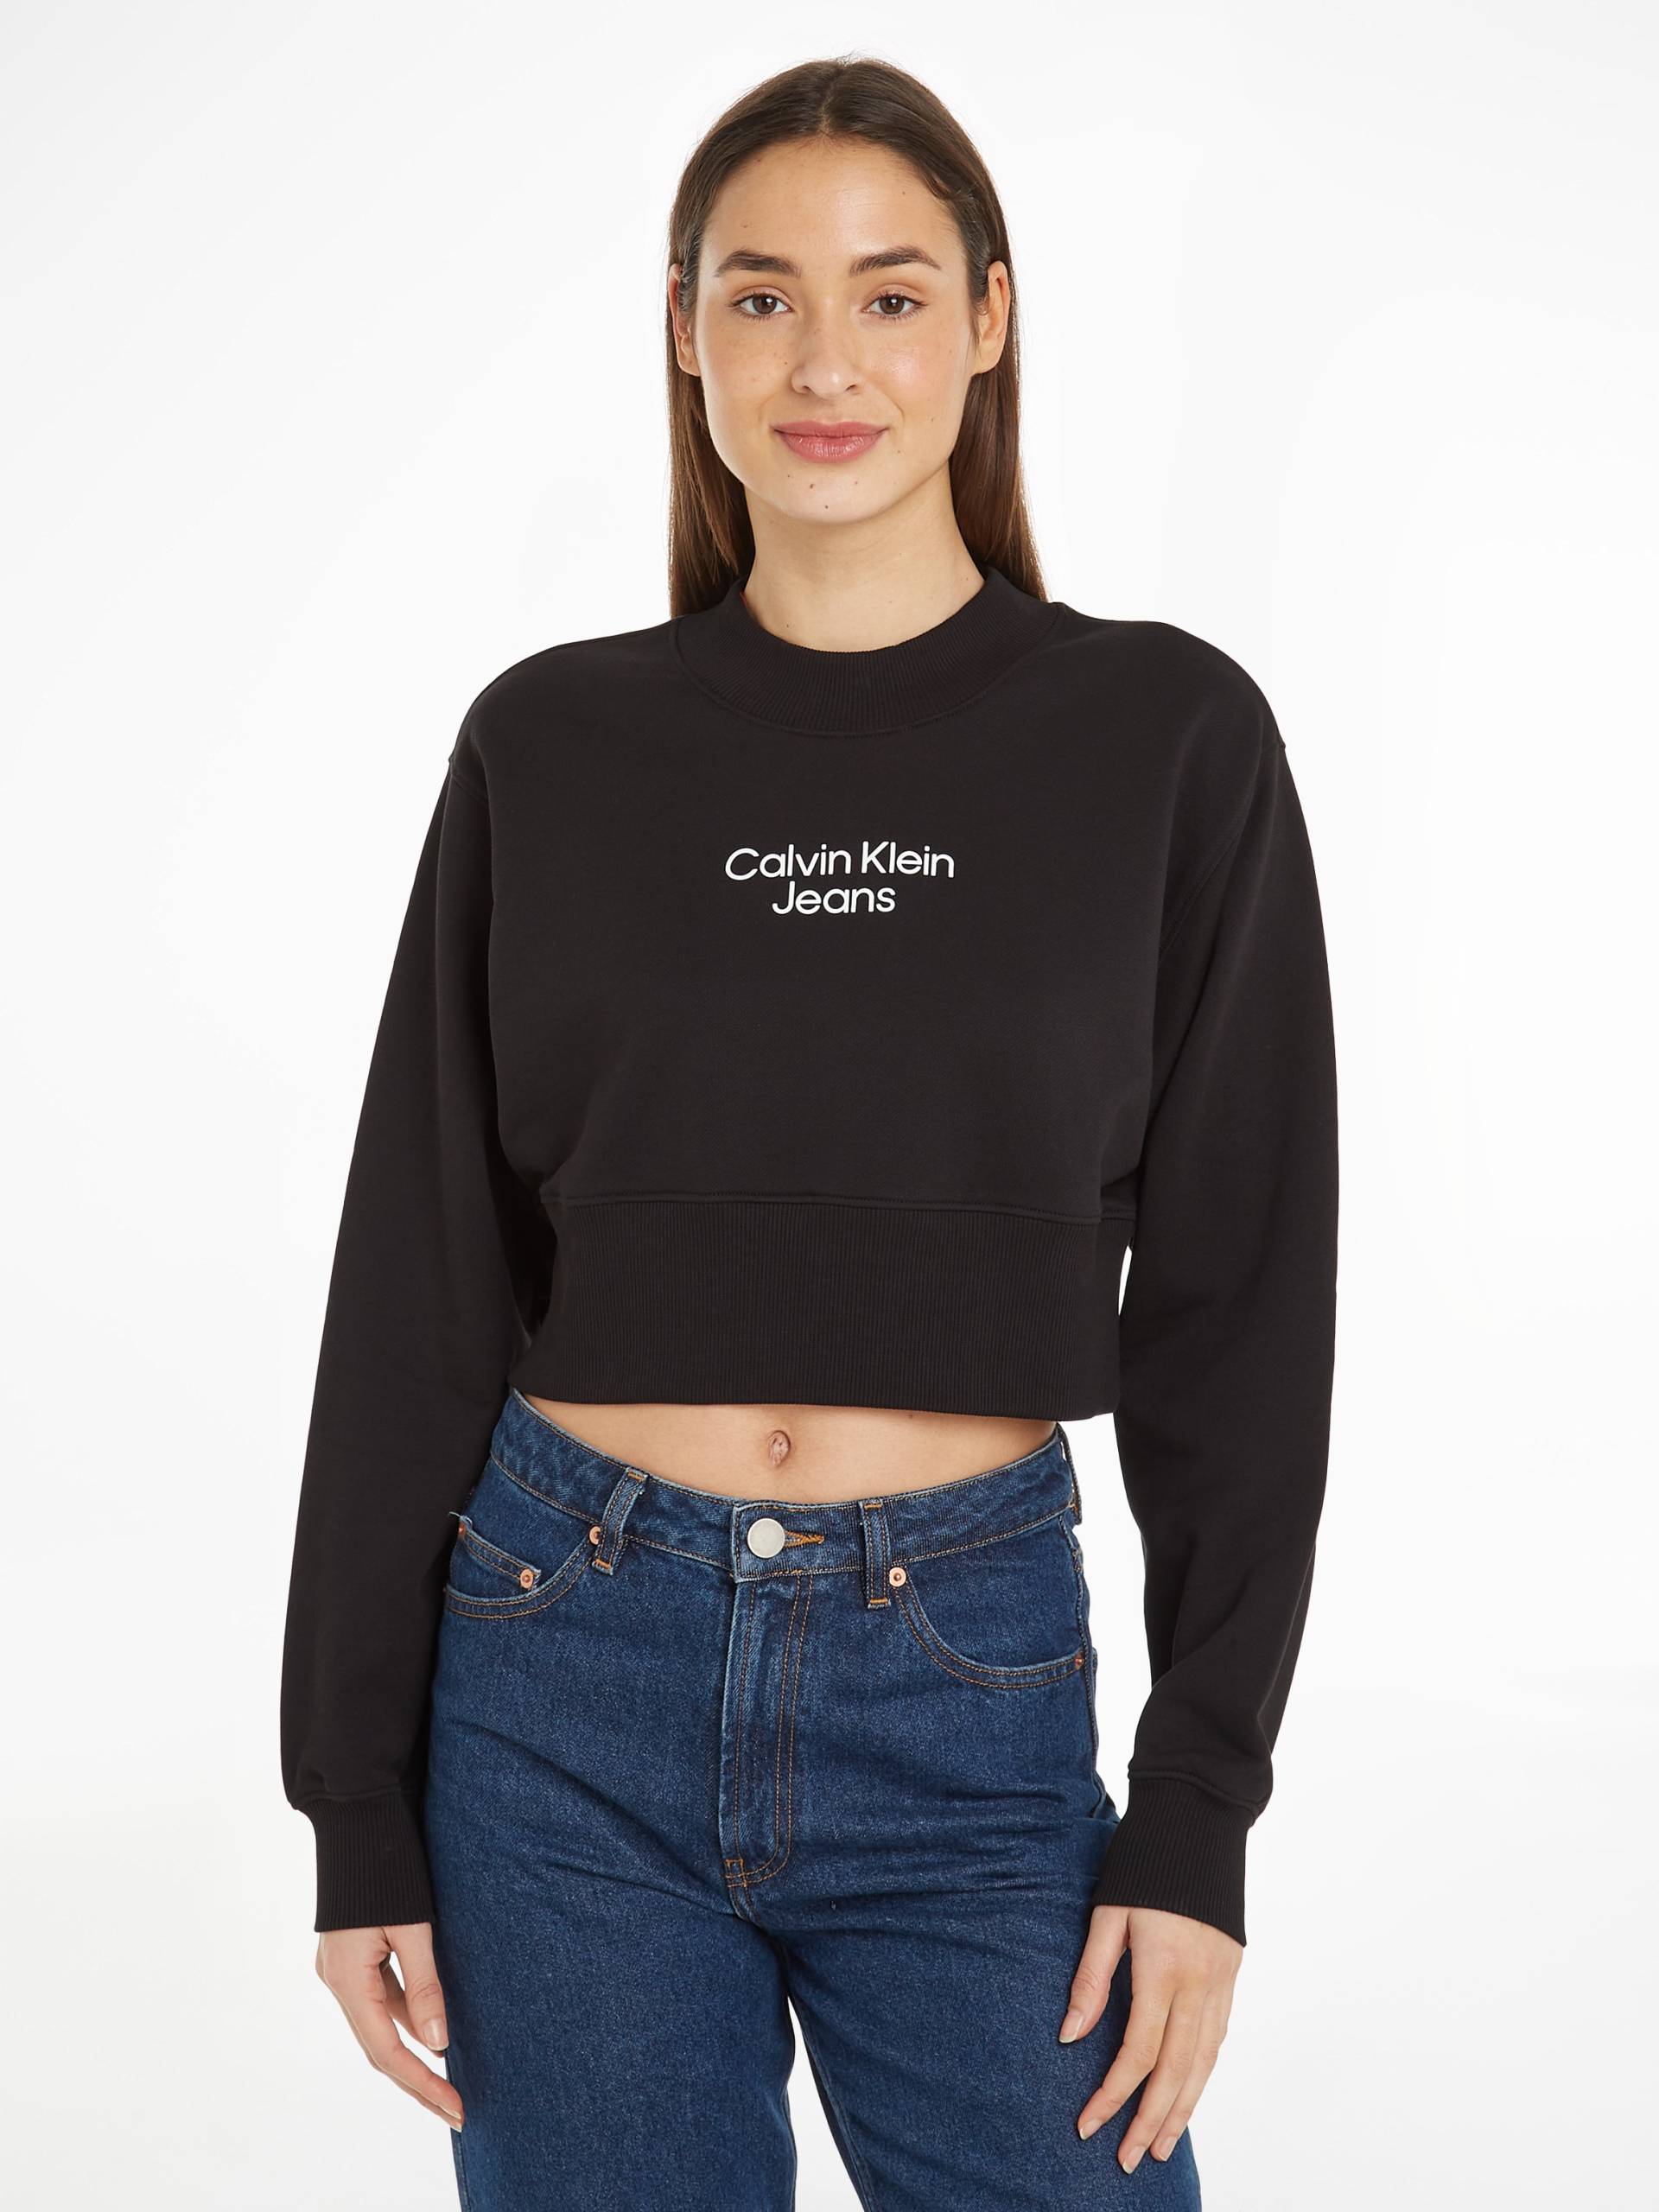 Calvin Klein Jeans Sweatshirt »STACKED INSTITUTIONAL CREWNECK« von Calvin Klein Jeans